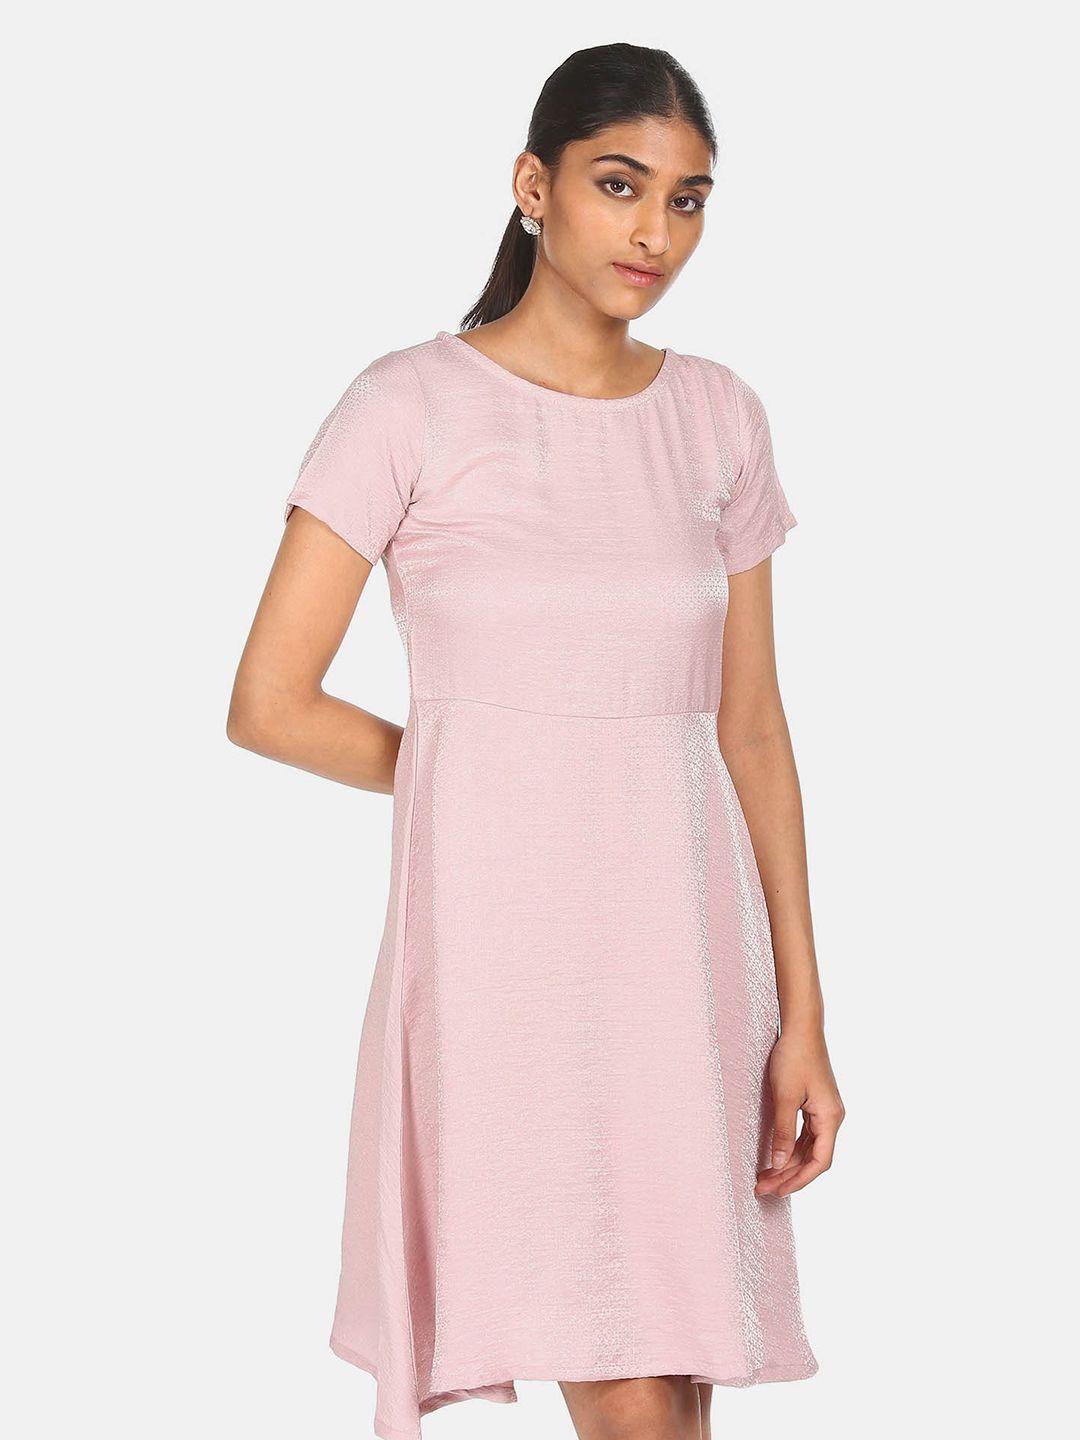 sugr-pink-patterned-dress